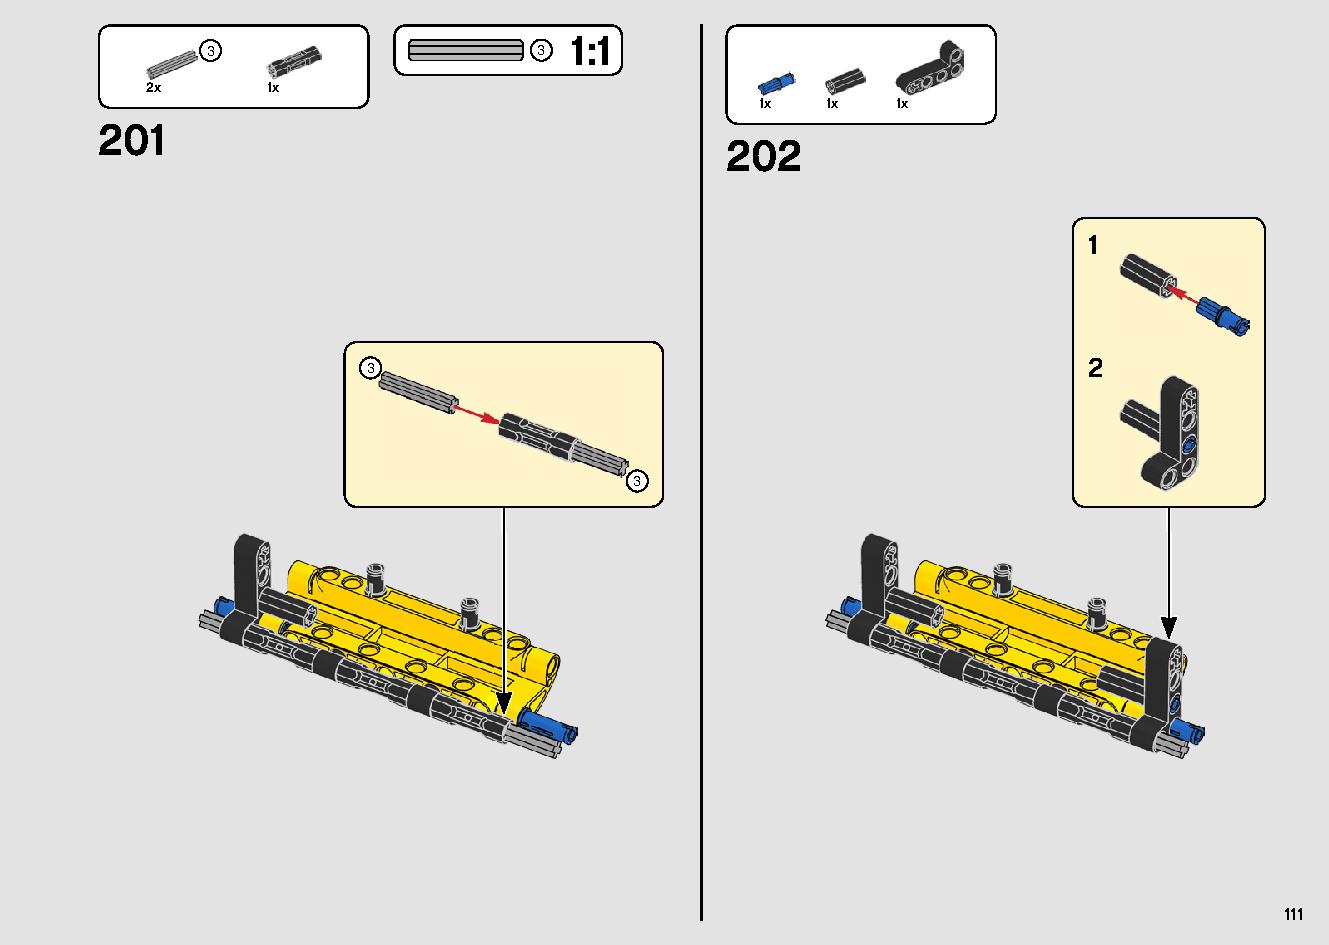 移動式クレーン車 42108 レゴの商品情報 レゴの説明書・組立方法 111 page